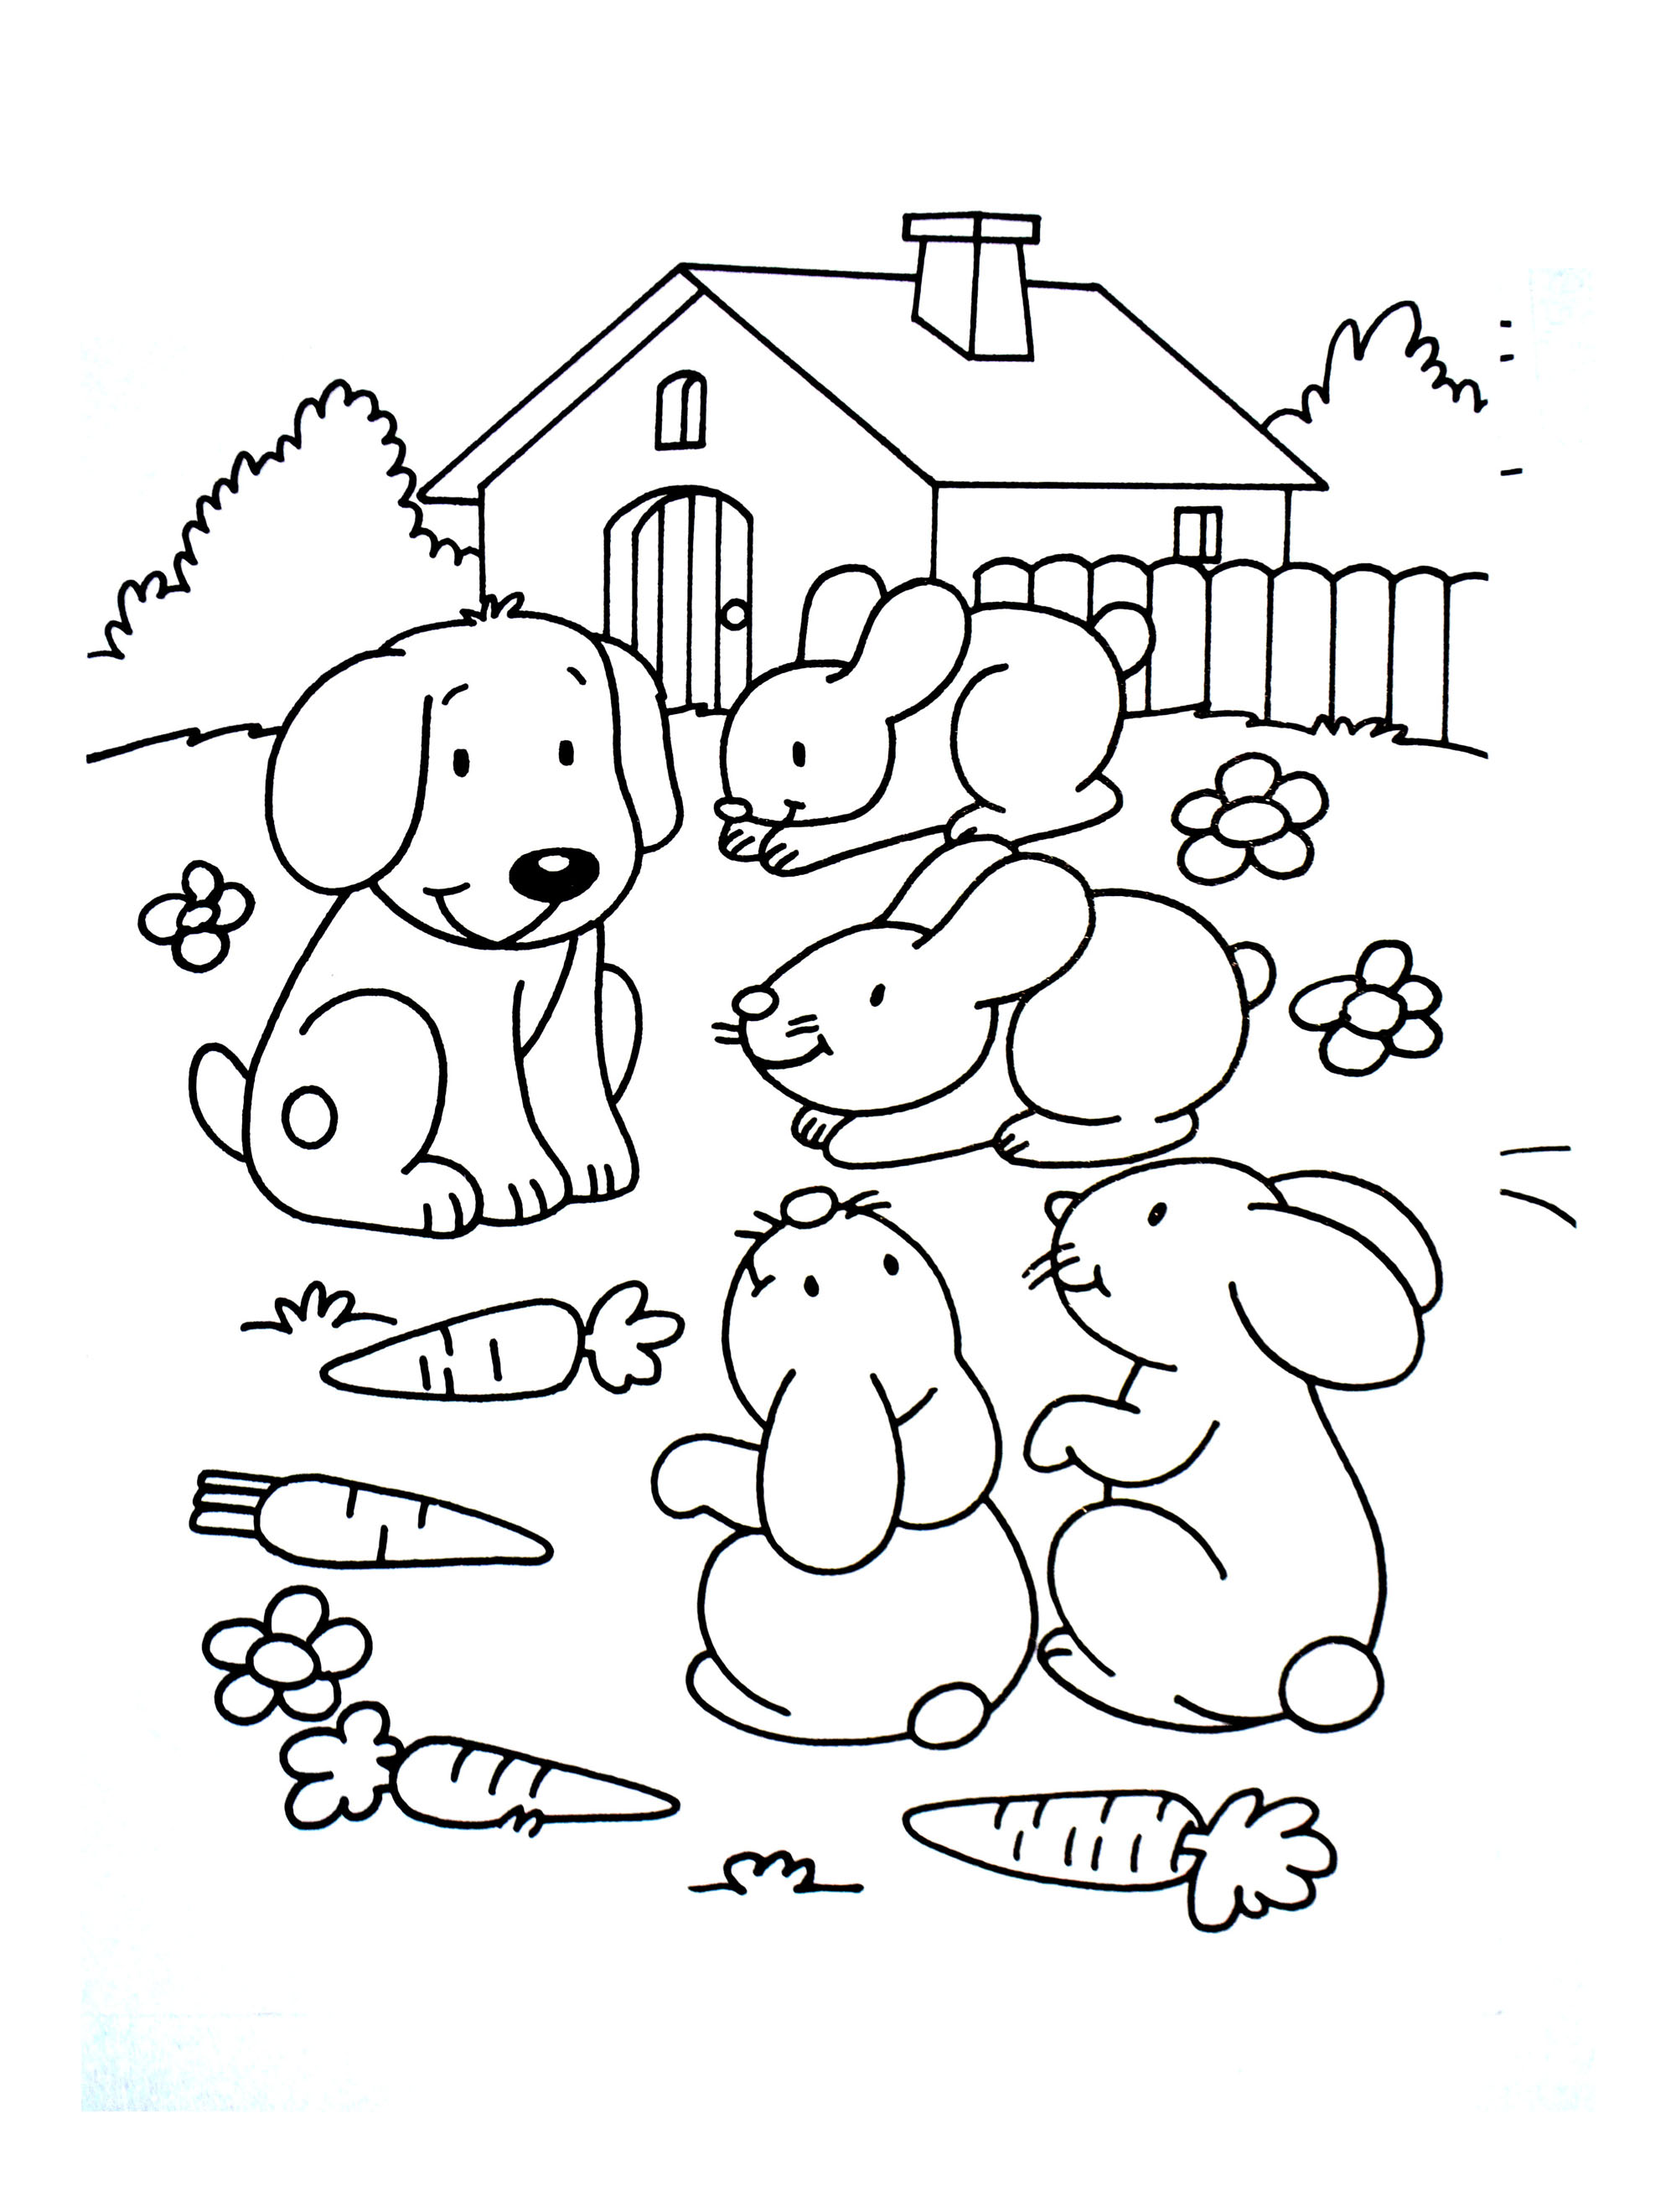 Página para colorear de perro con estilo de dibujos animados de animales de granja para niños